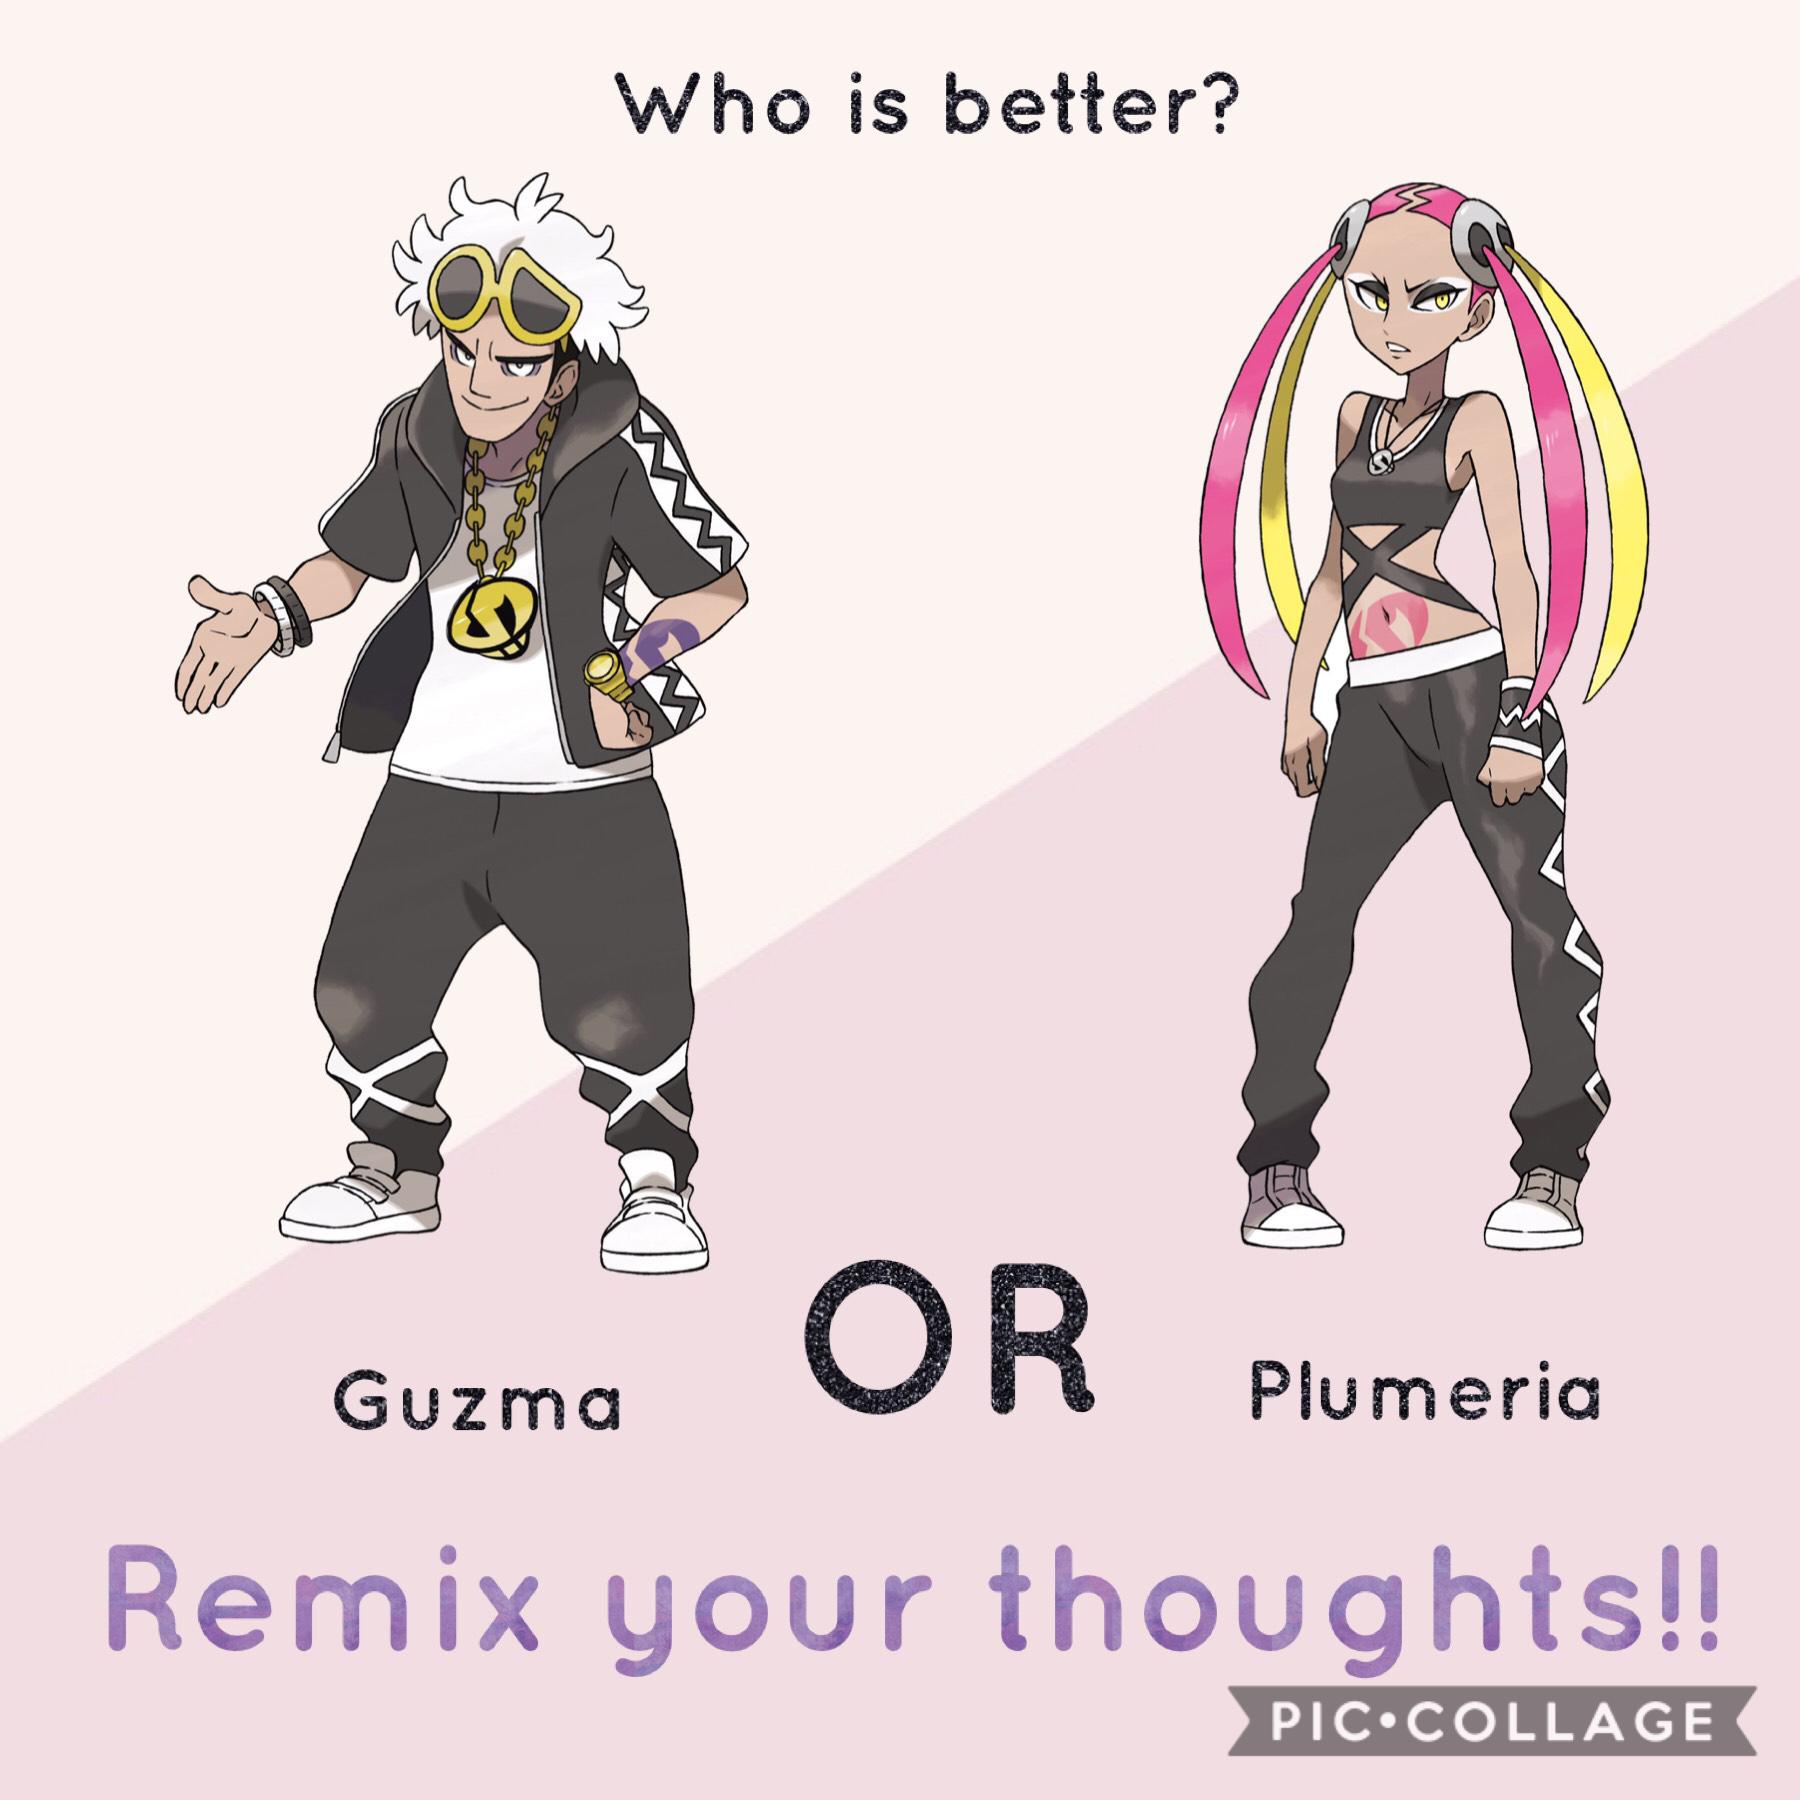 Who’s better? Guzma OR Plumeria??